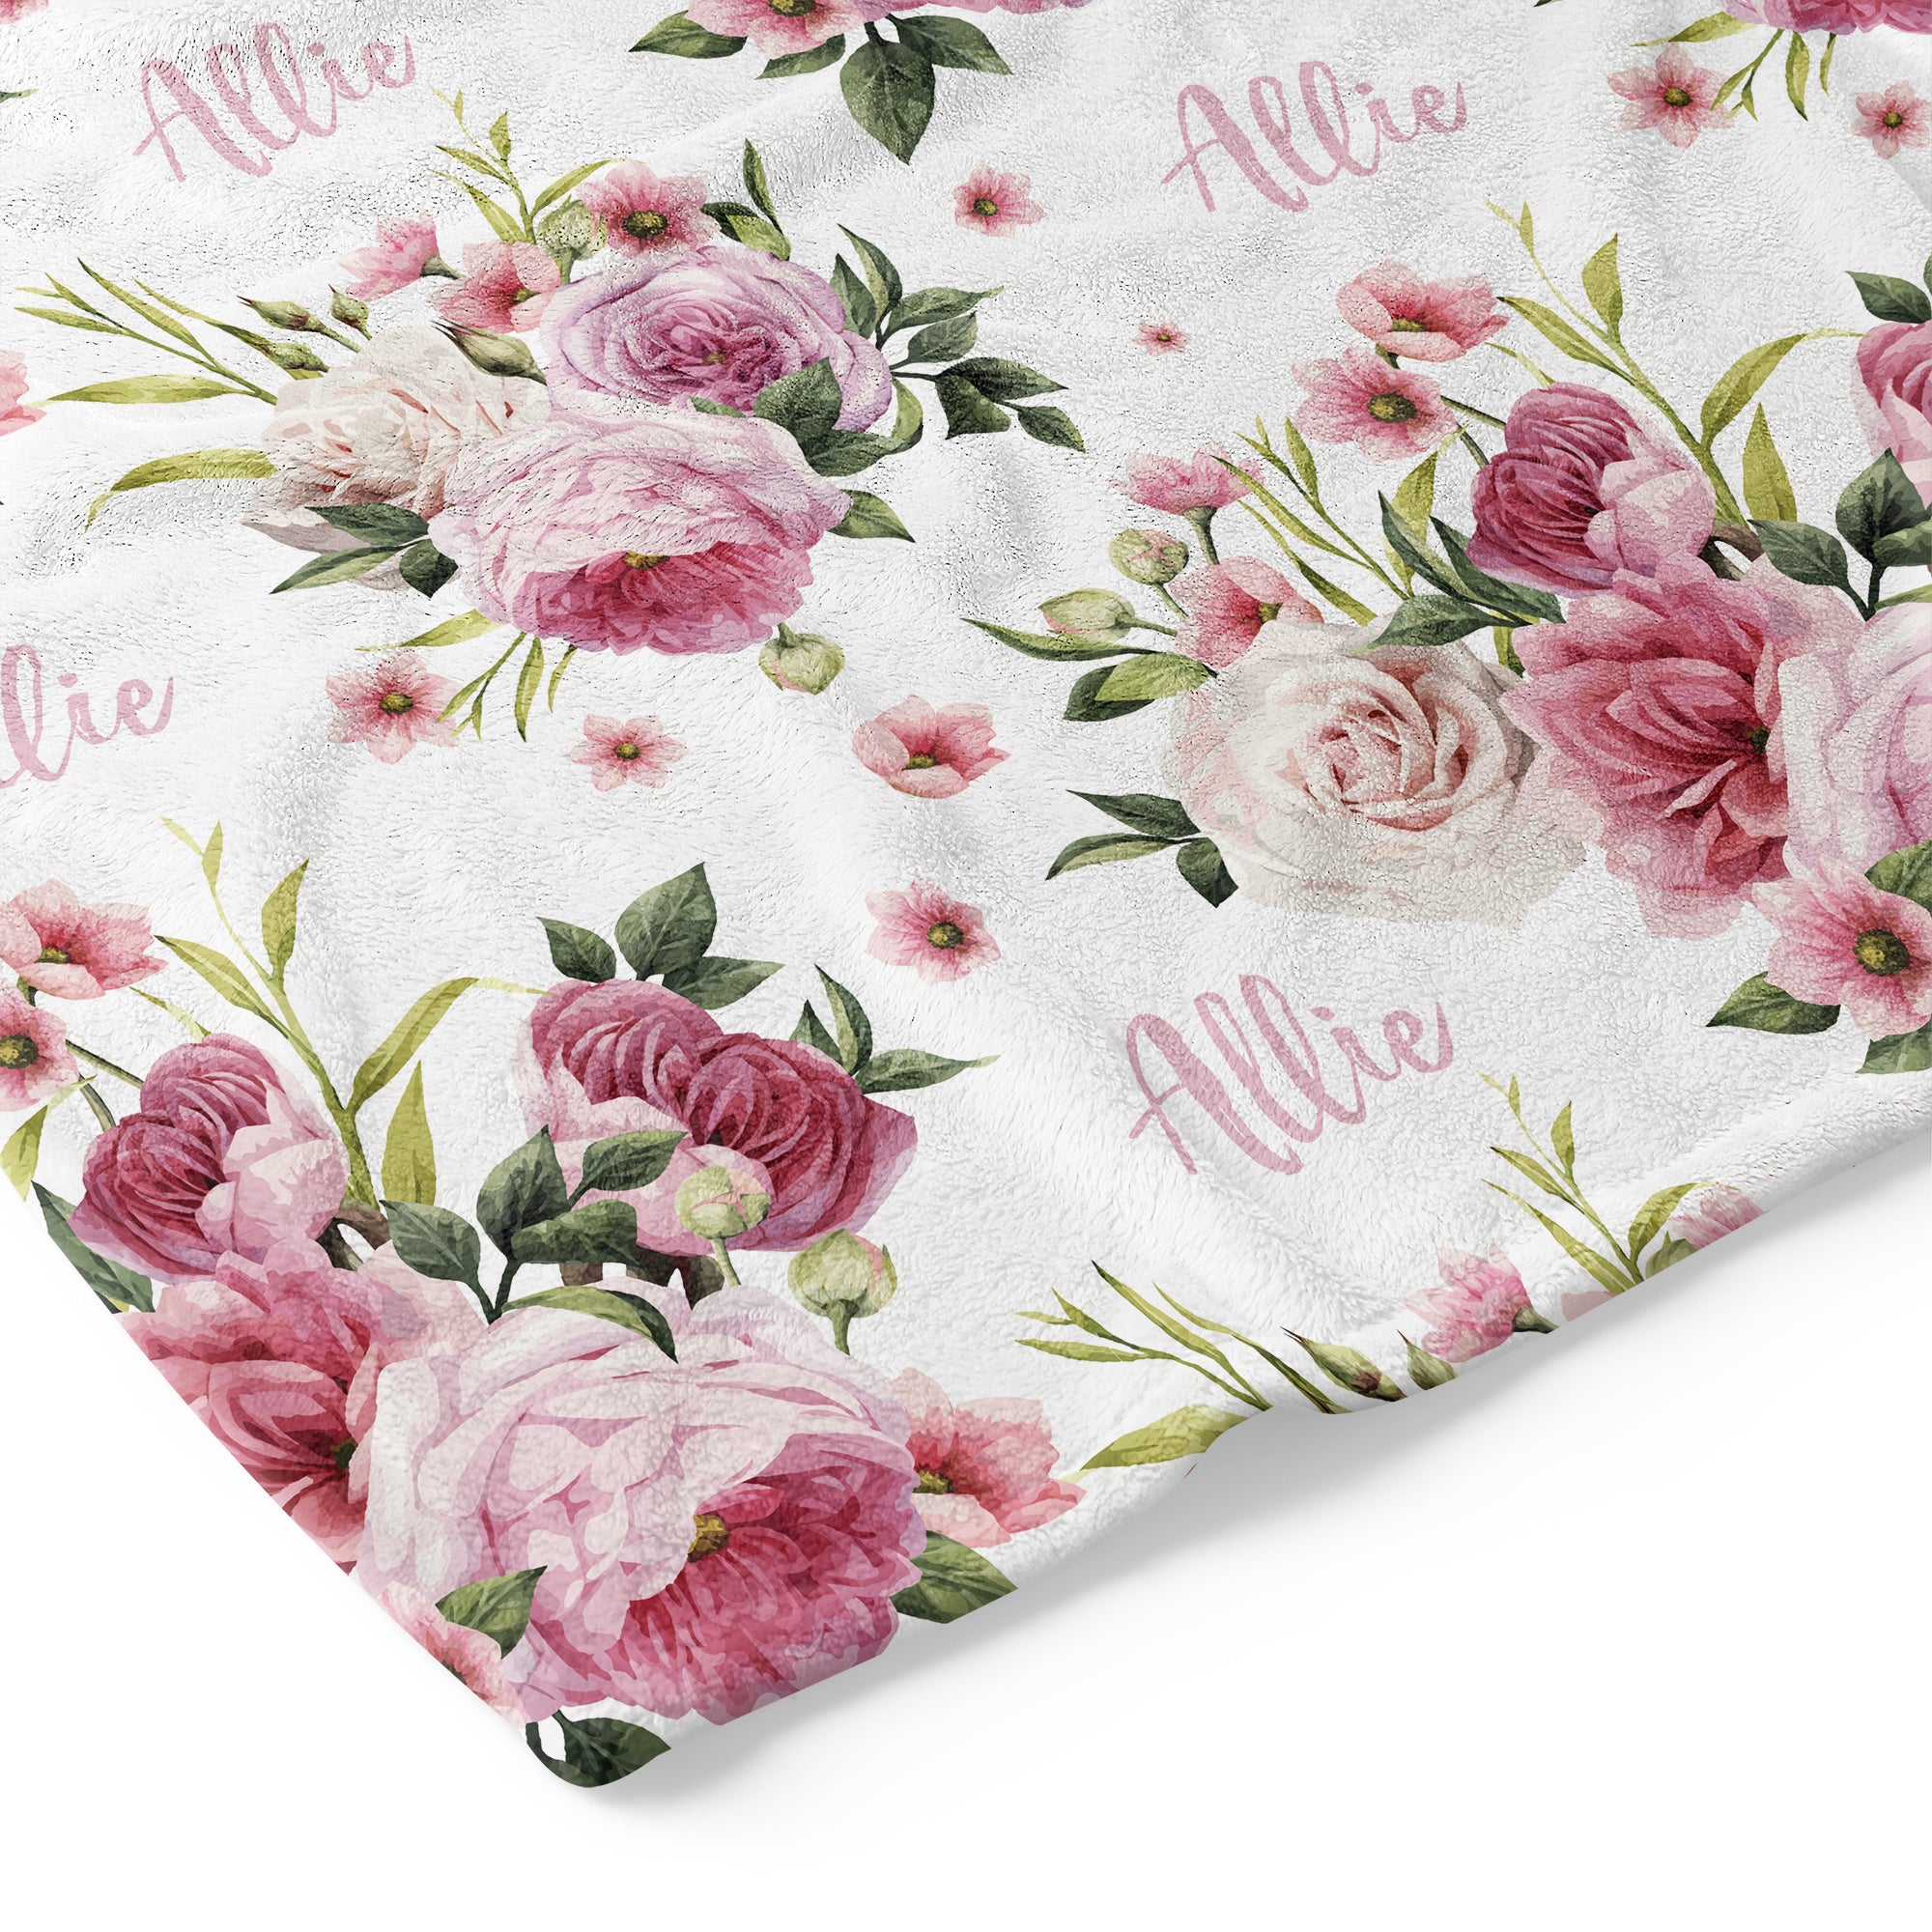 Vintage Bloom - Personalised Keepsake Blanket